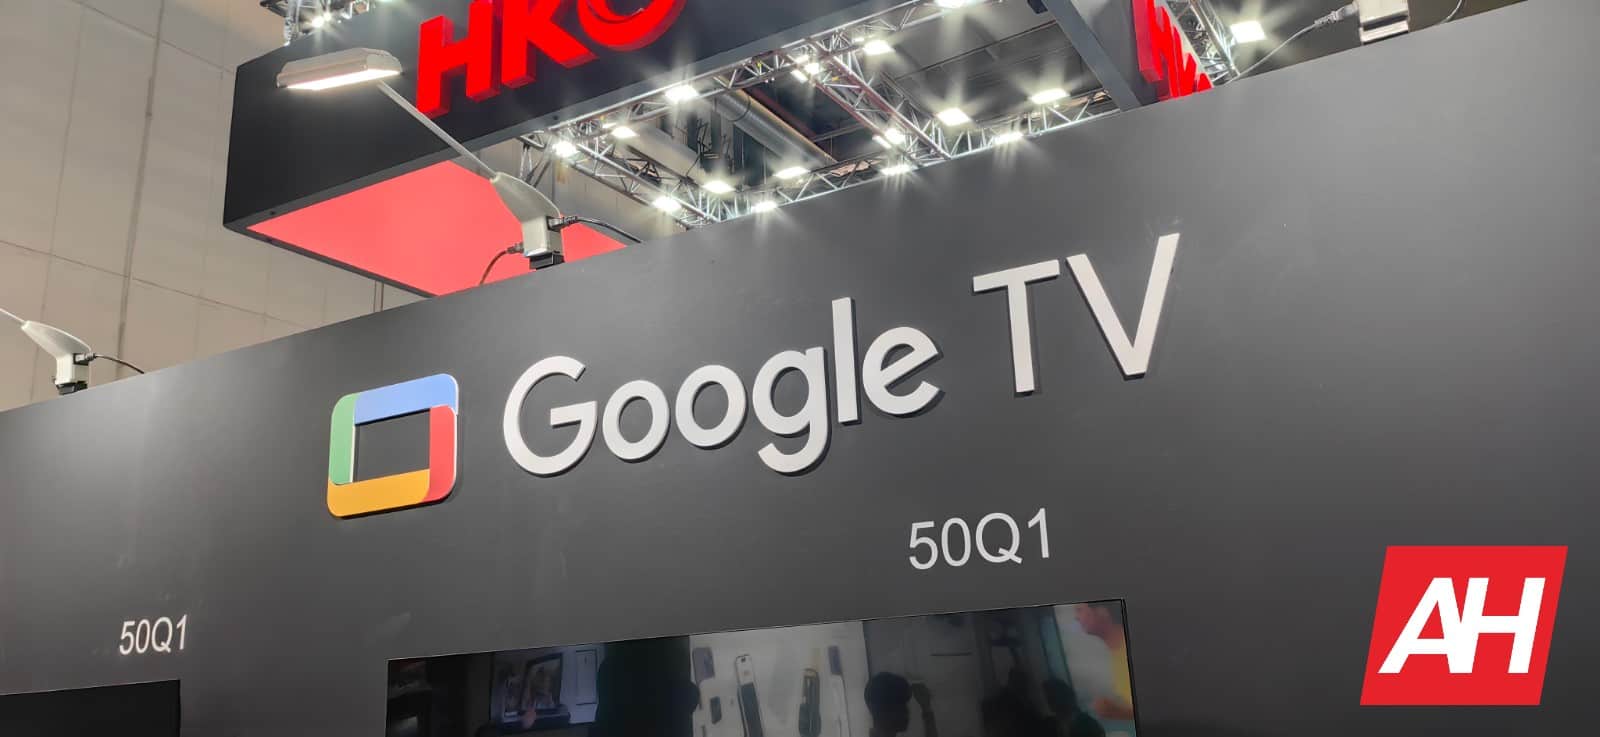 El botón ‘Magic’ de Google TV finalmente hace su debut